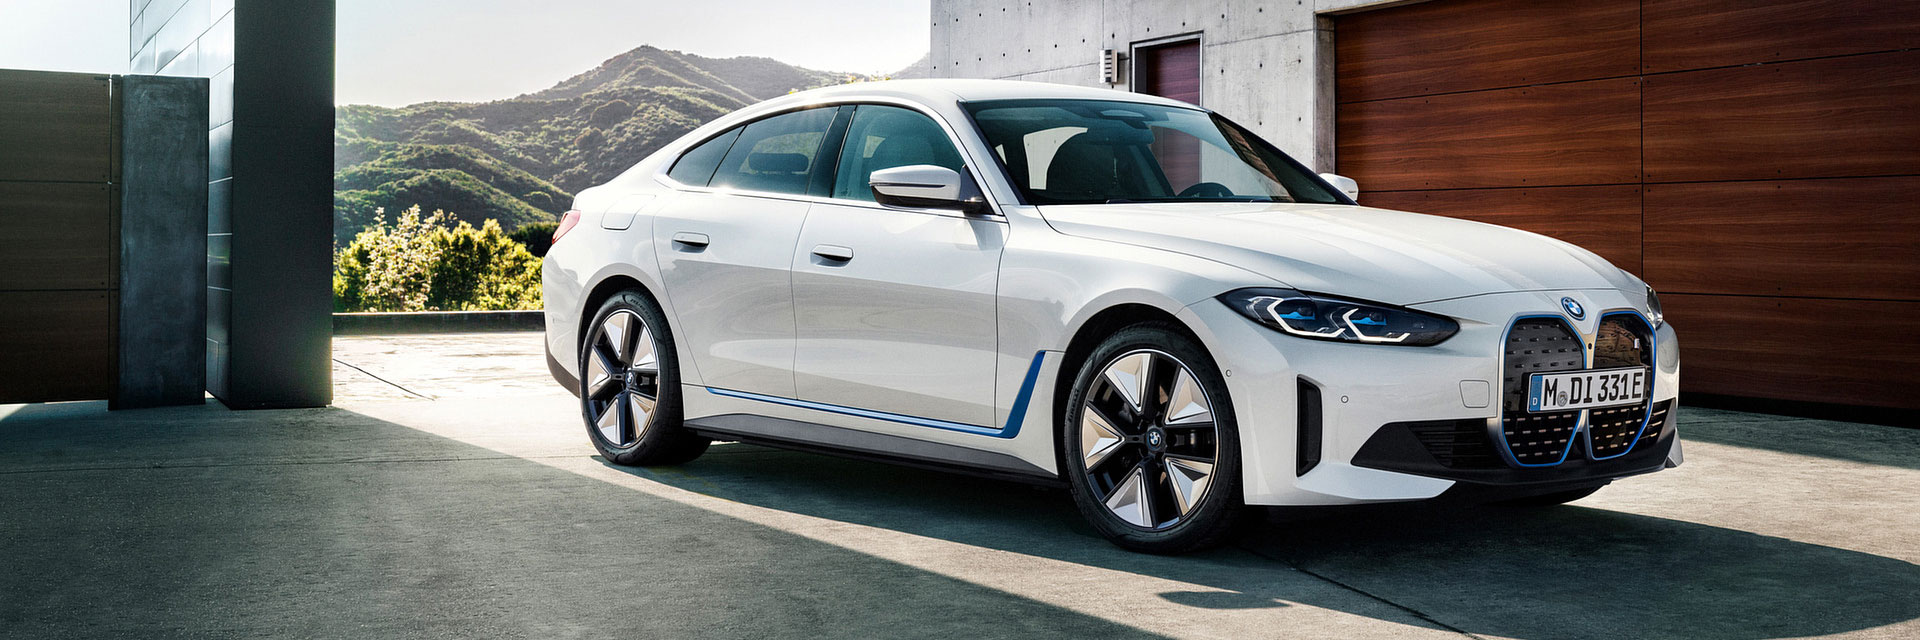 BMW i4, carros novos, carros km0, carros serviço, carros usados